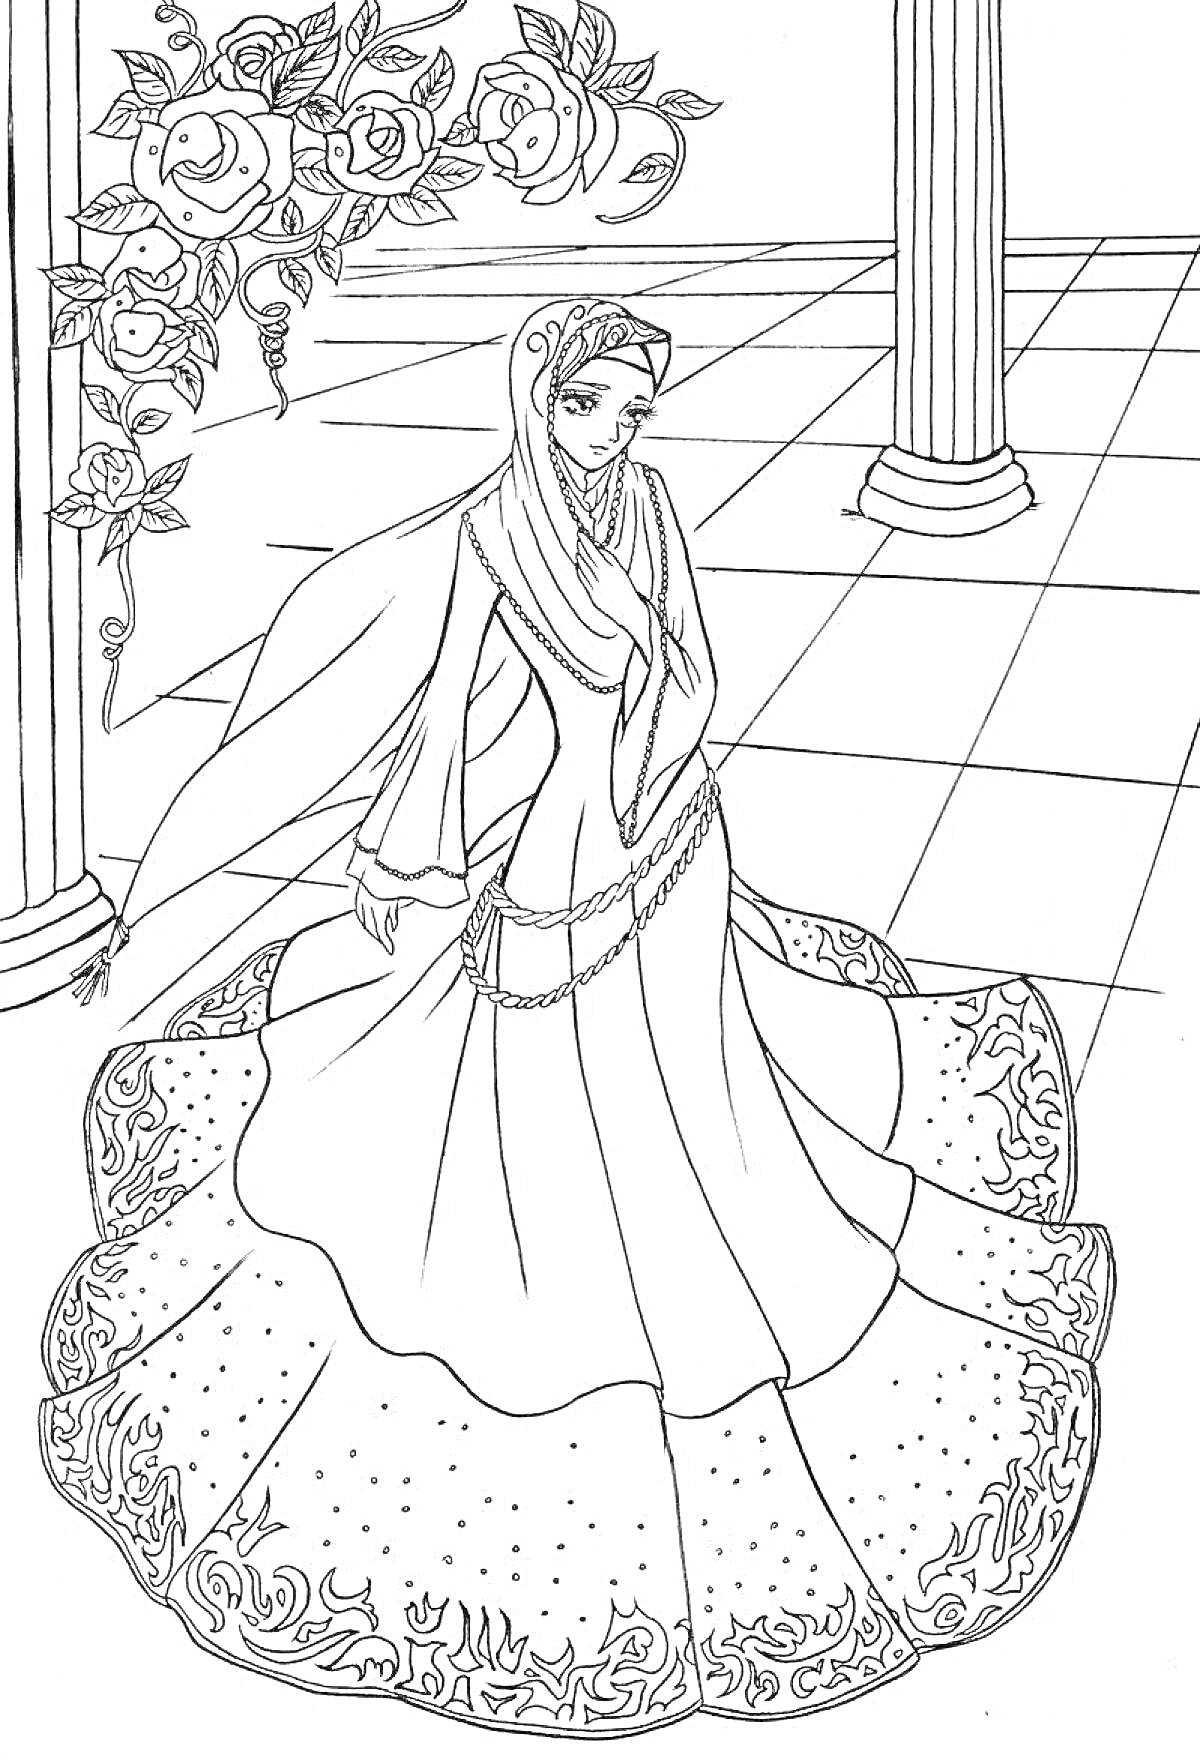 Мусульманка в традиционной одежде под аркой с розами